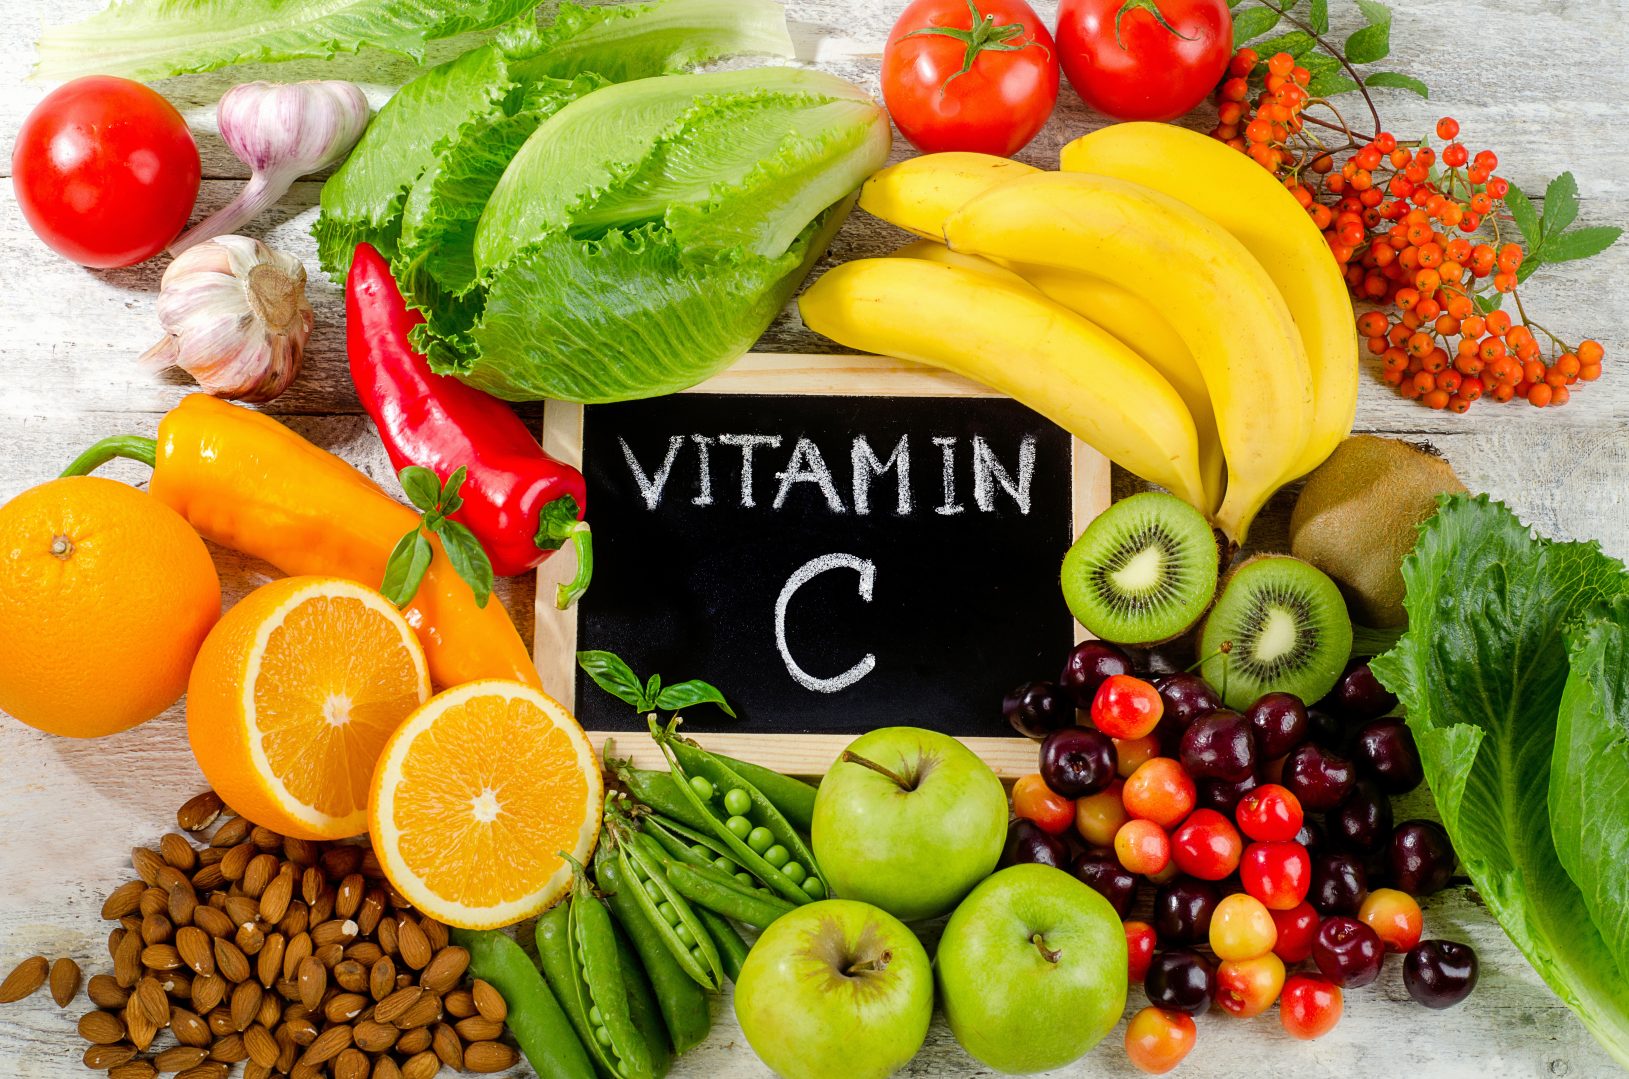 La Vitamina C se necesita para fortalecer el sistema inmunológico ¿Cual es la cantidad necesaria?